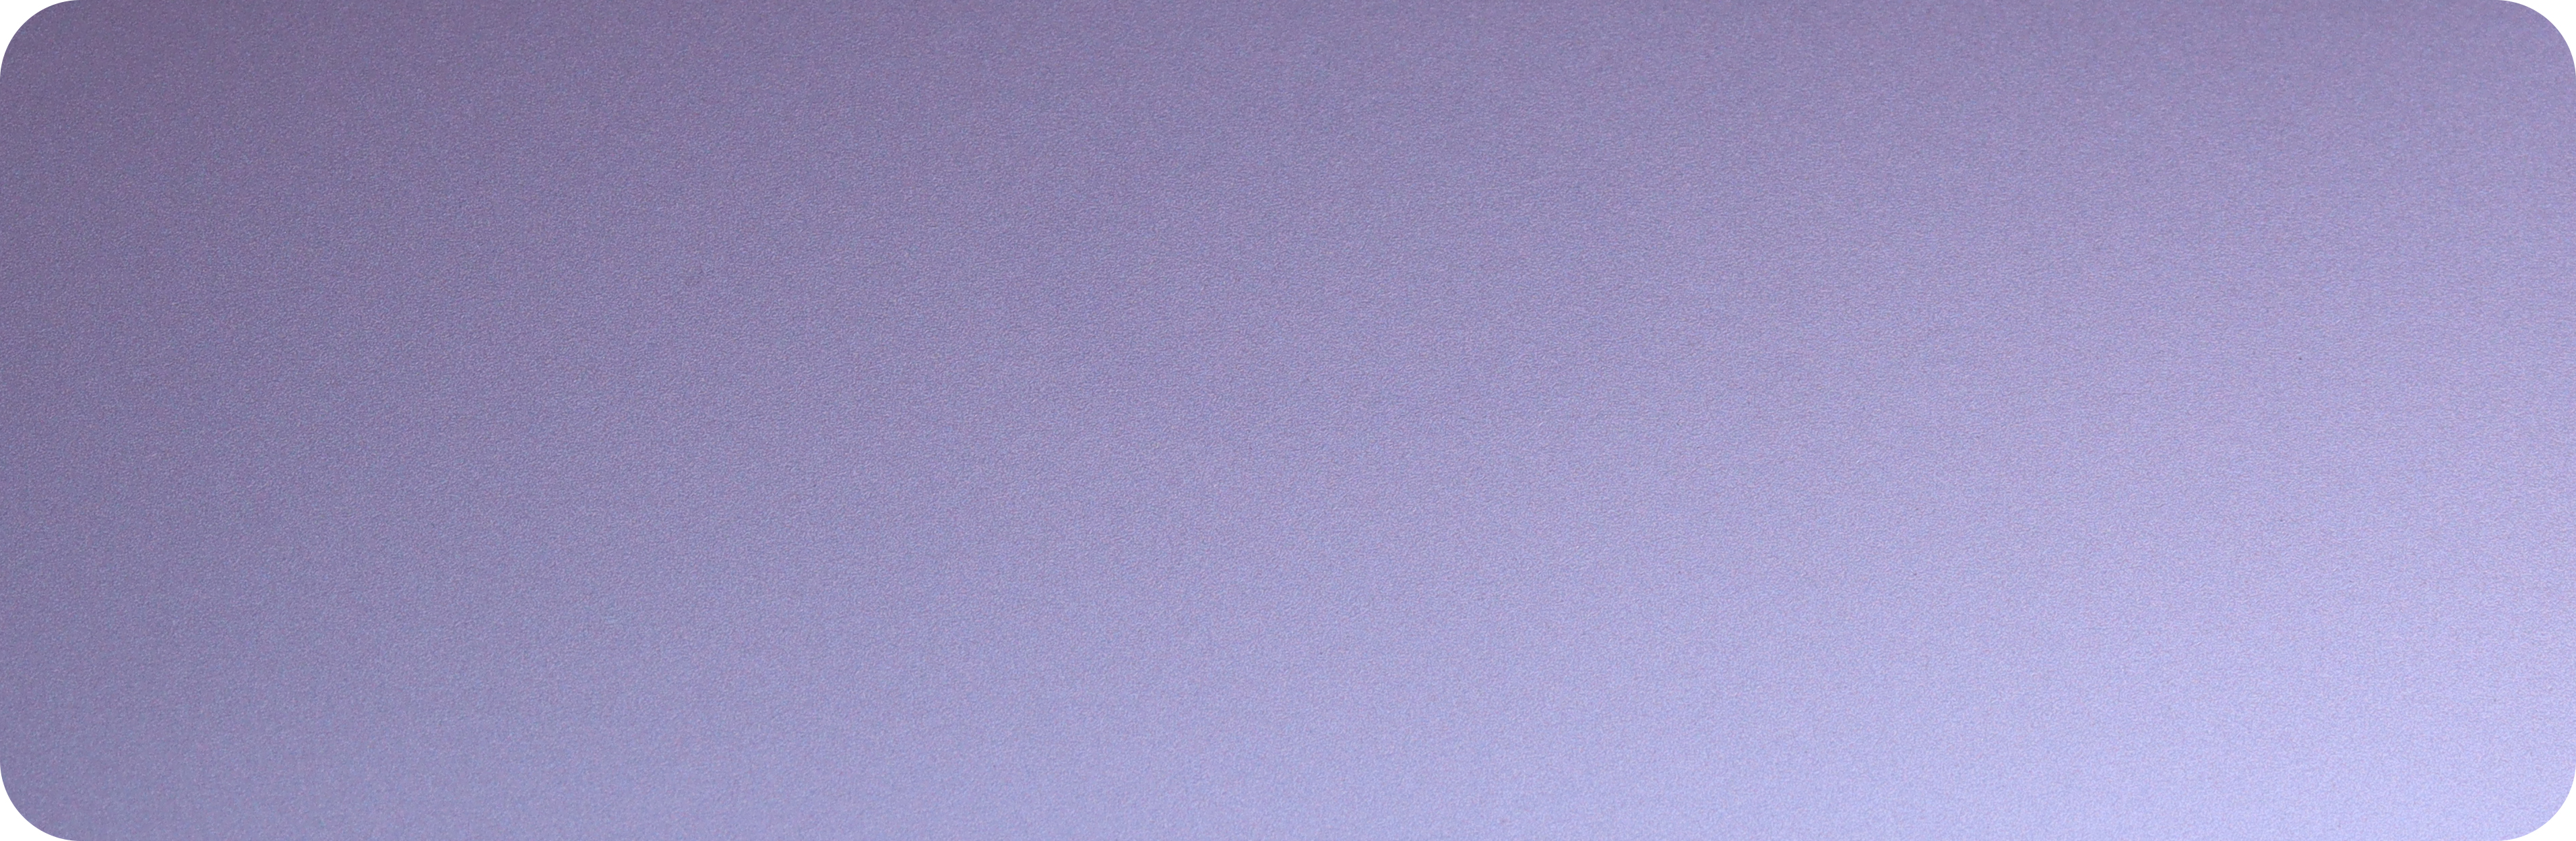 9.TPU星黛紫-TPU-xingdai purple